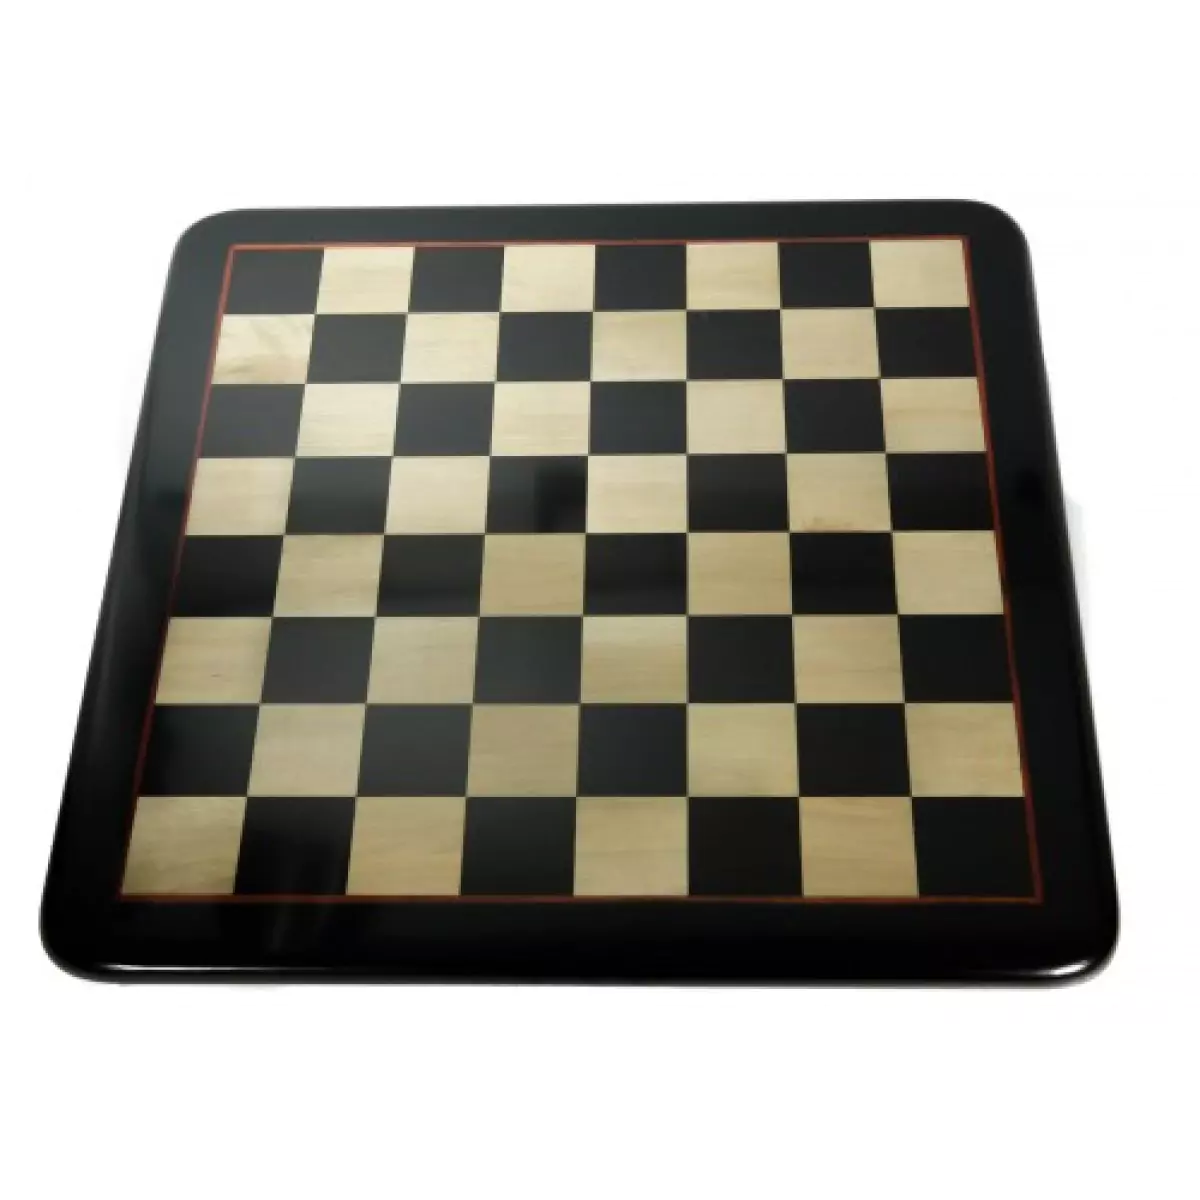 Breite 42 cm groß Schachspiel Luxus 